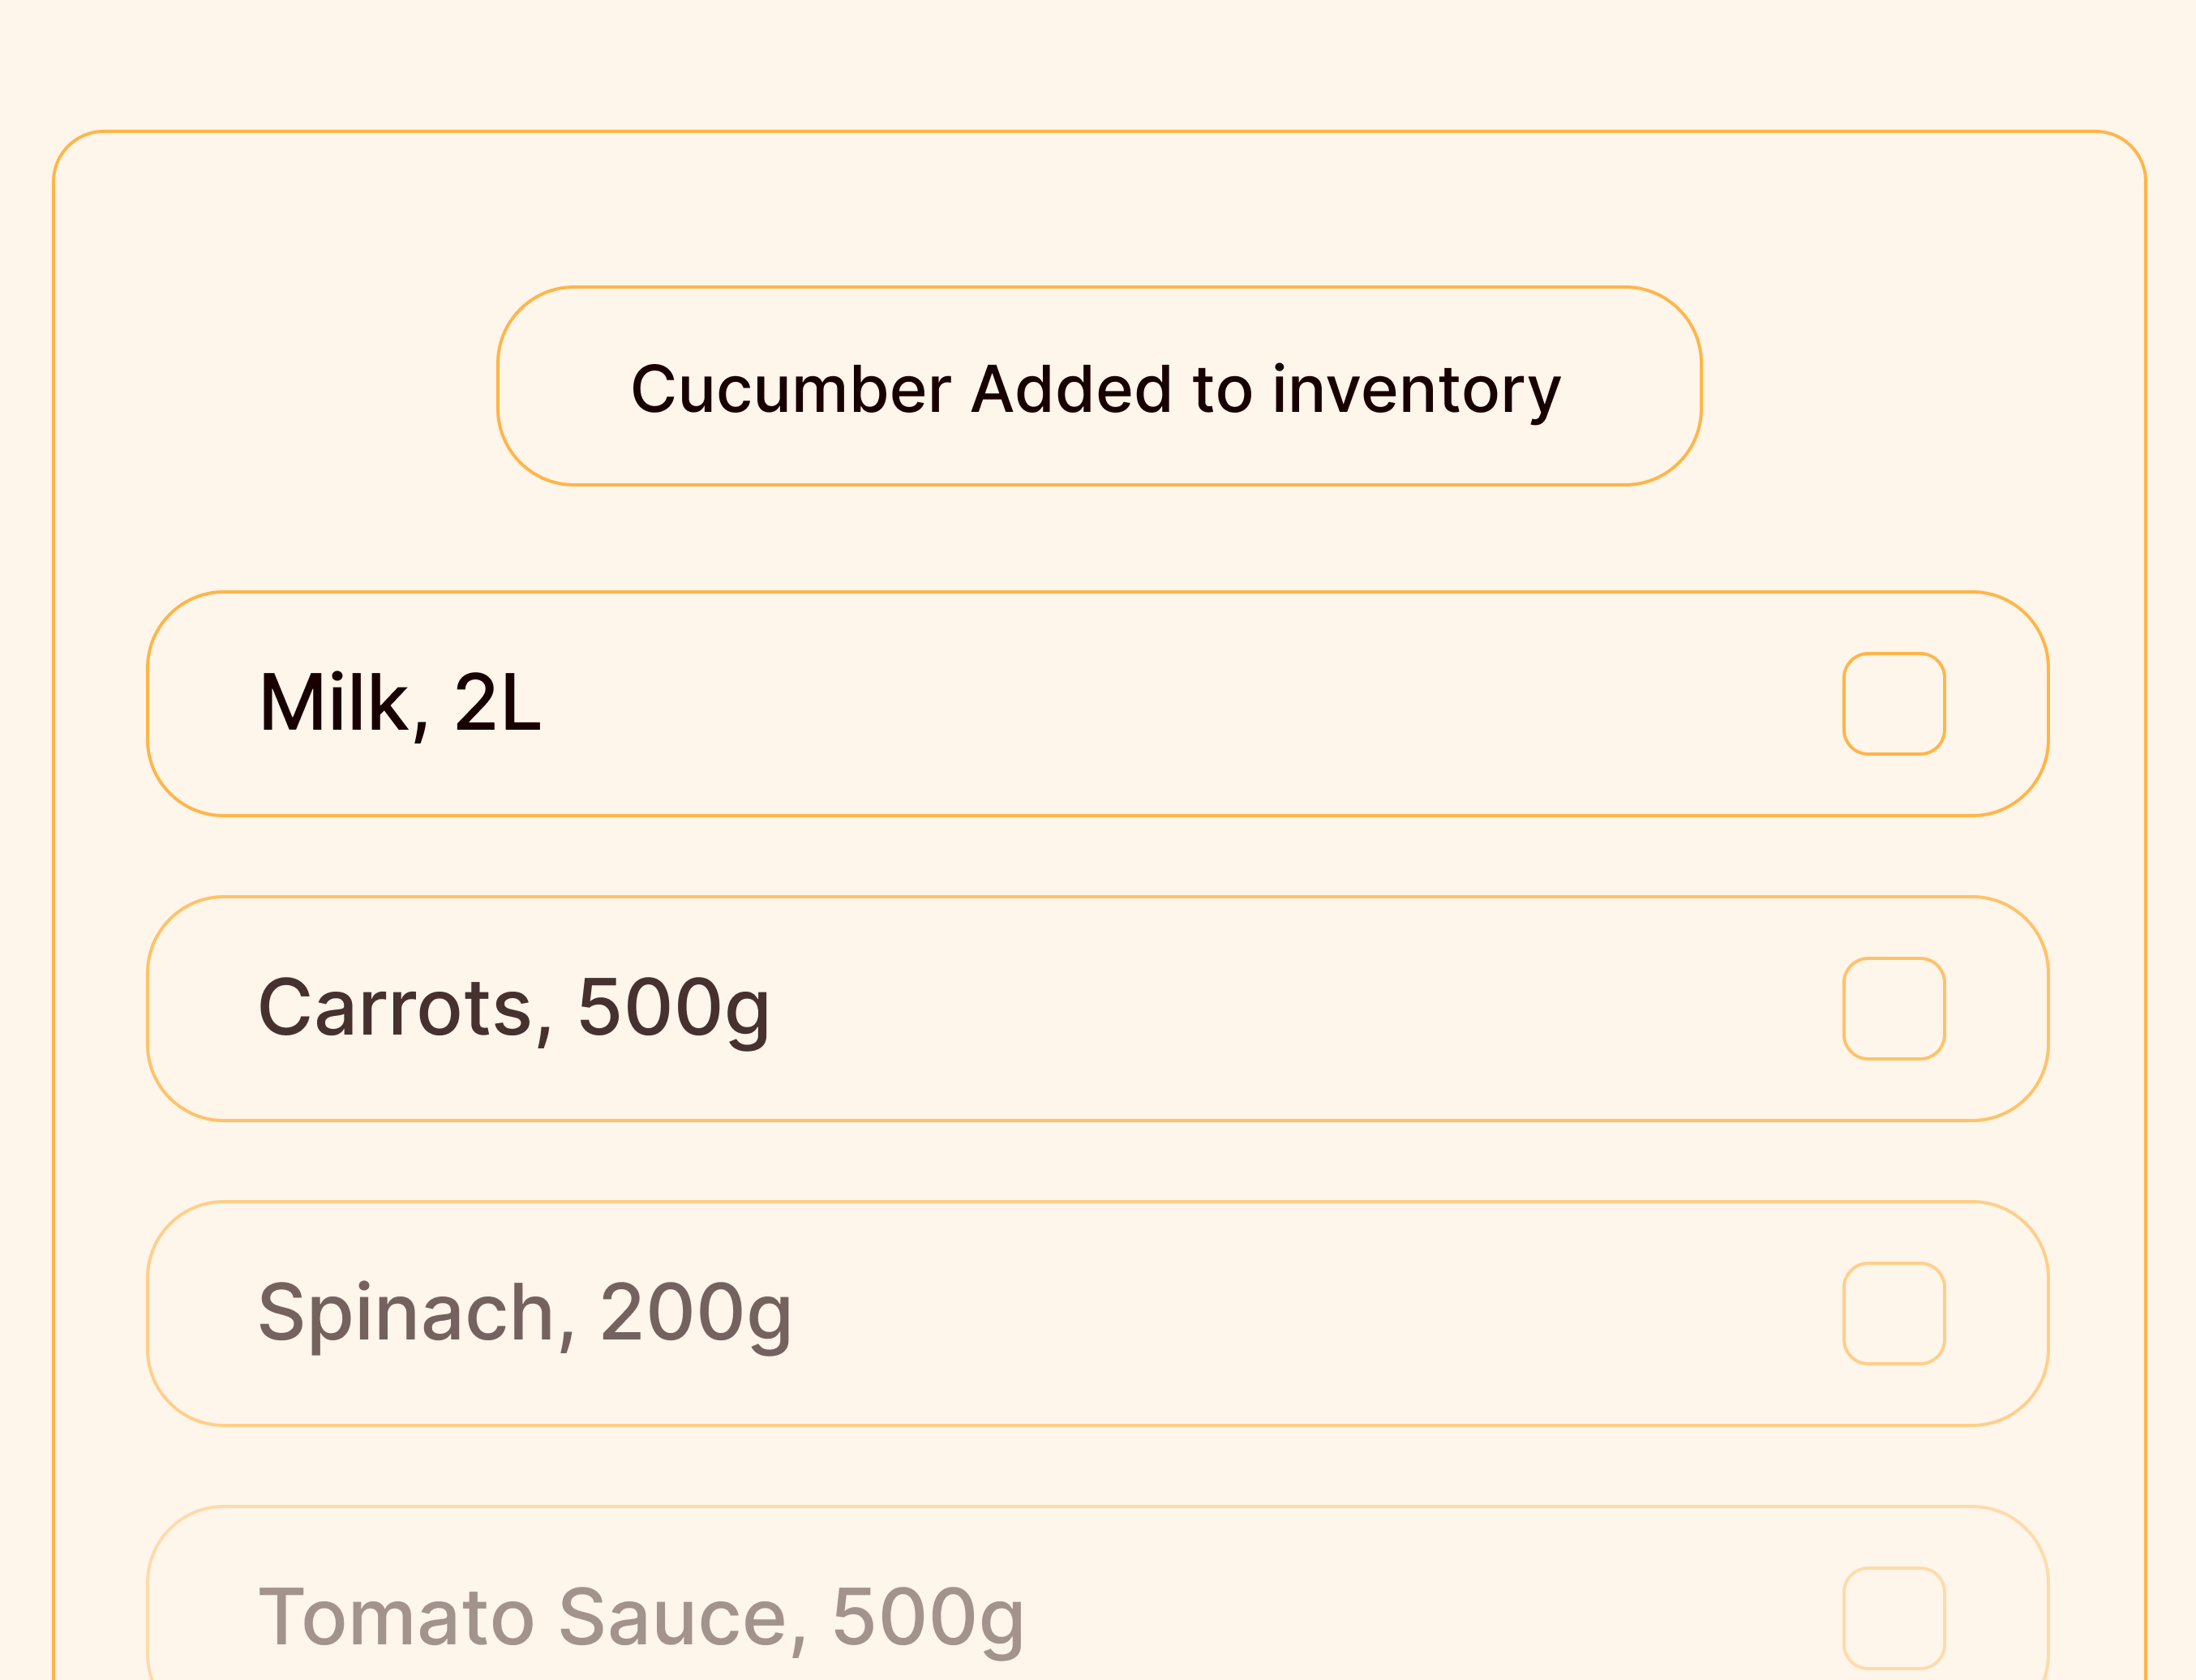 Smart grocery lists